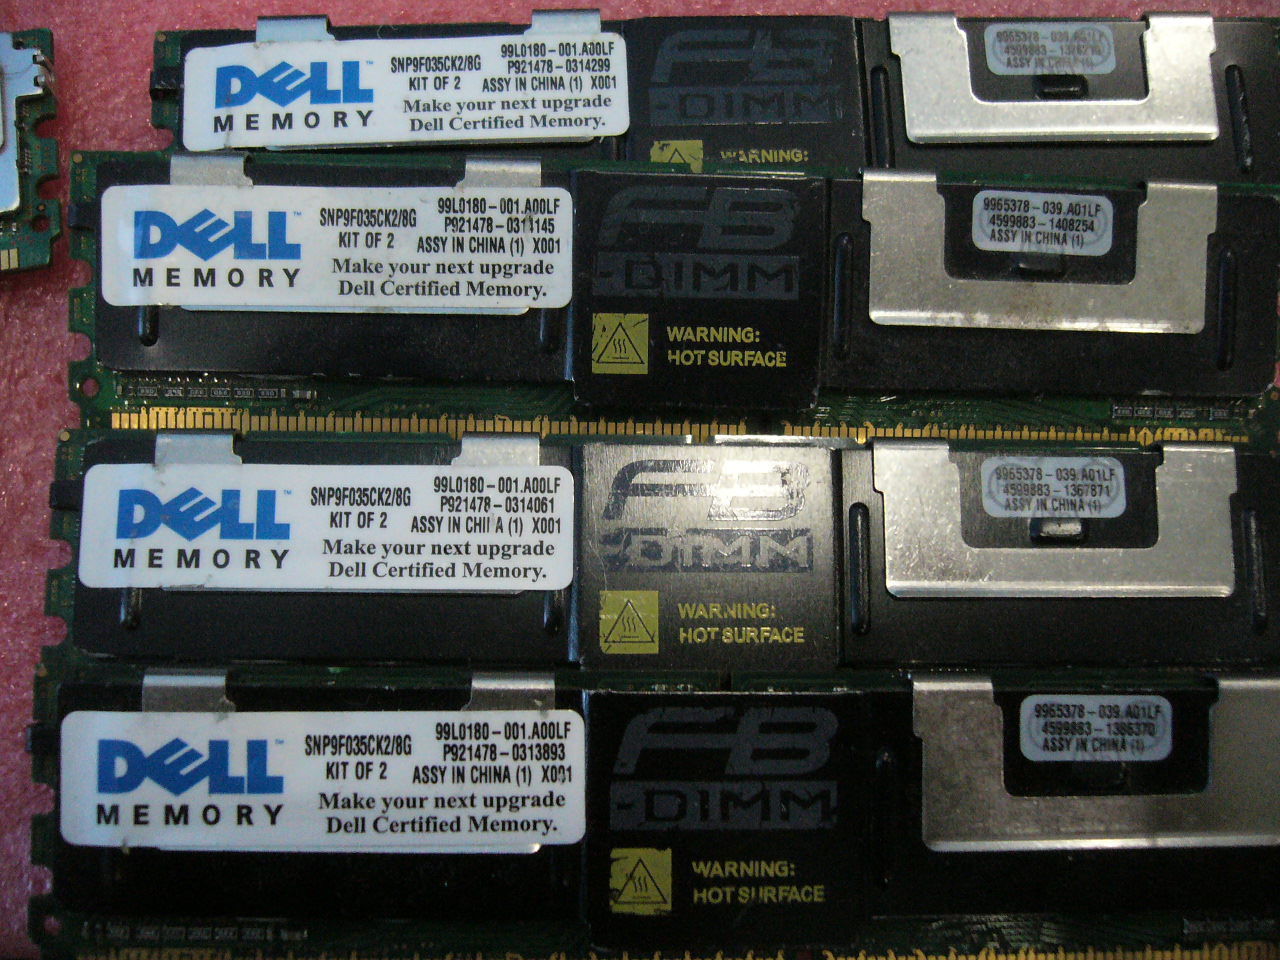 QTY 1x 4GB DDR2 PC2-5300F ECC FBD Server memory Dell SNP9F035C/4G SNP9F035CK2/8G - zum Schließen ins Bild klicken